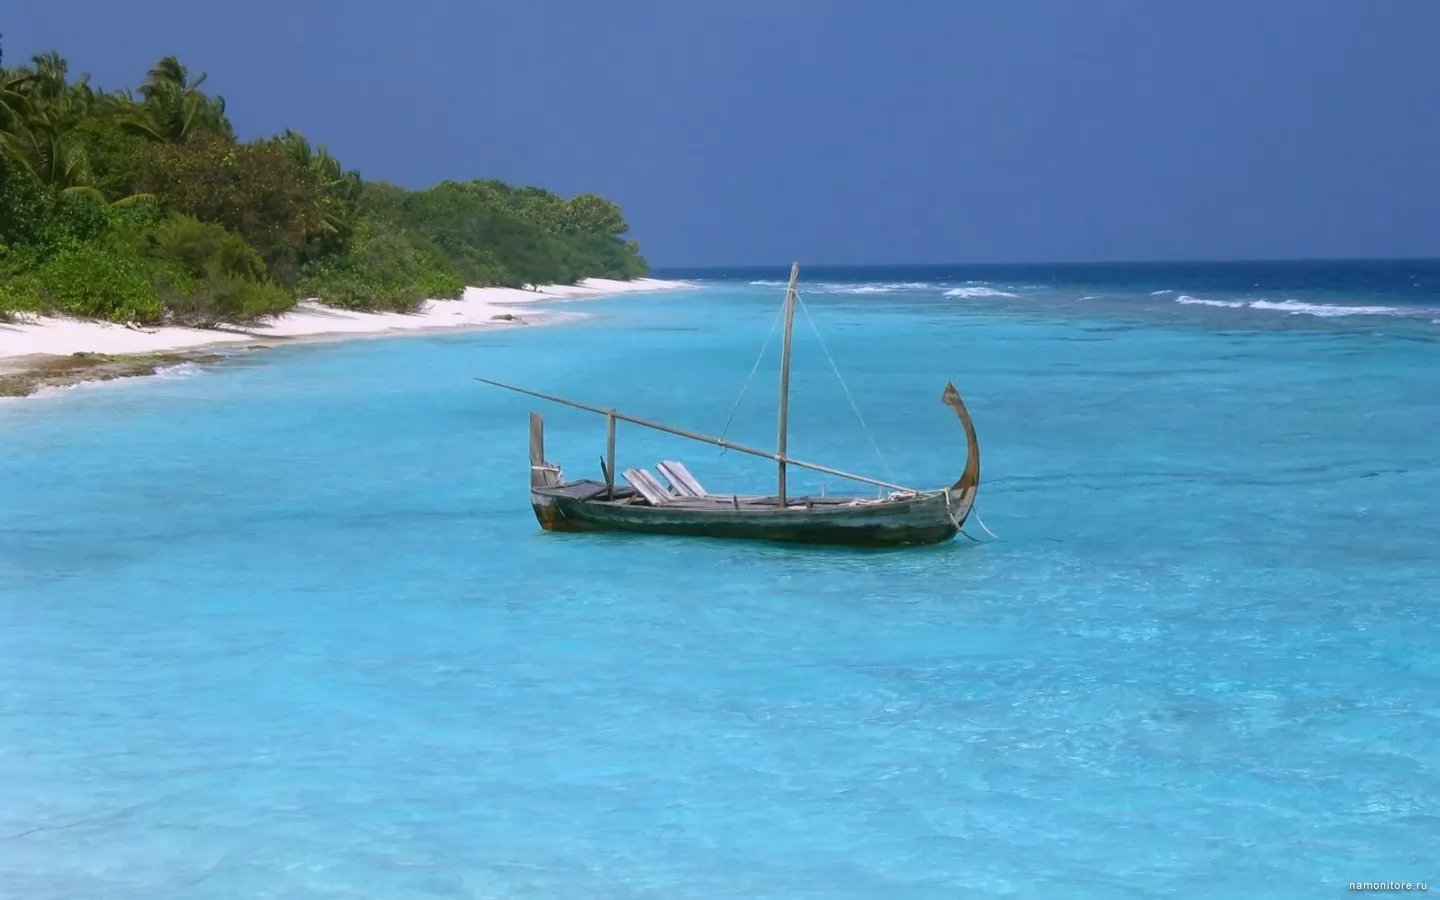 Мальдивское умиротворение, корабли, море, парусник, побережье, природа, синее, тропики х